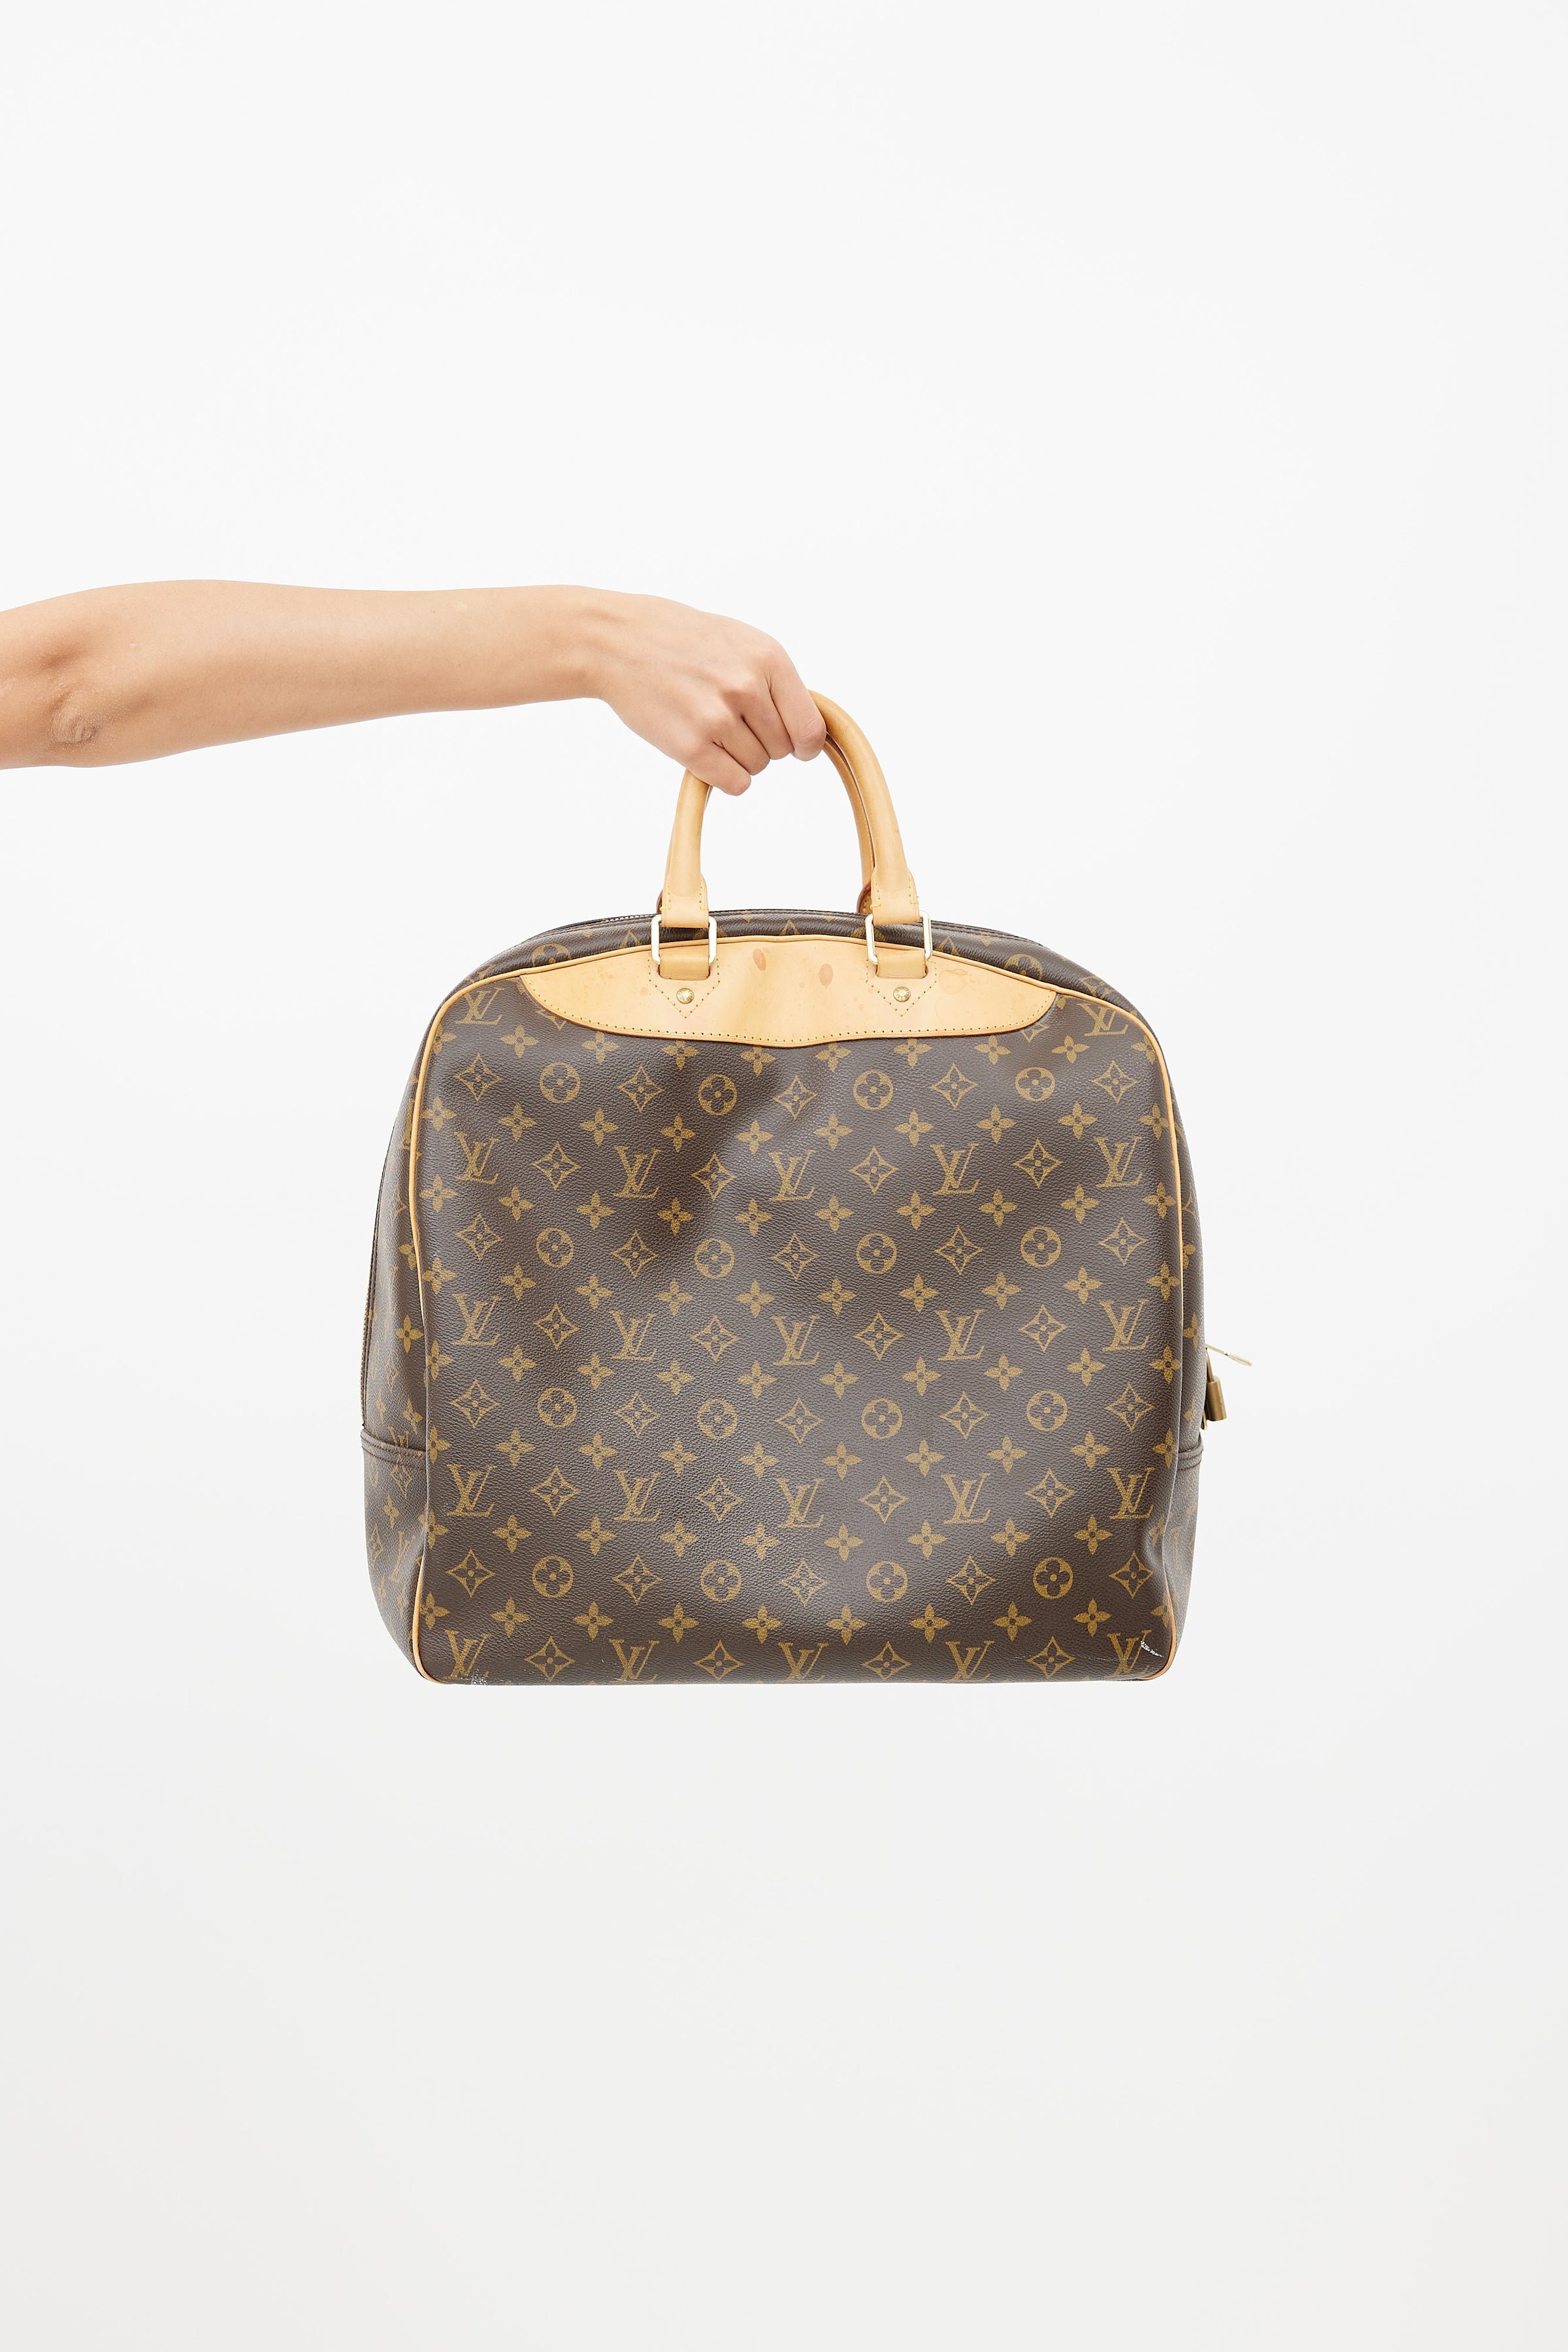 Louis Vuitton Evasion Boston Travel Bag